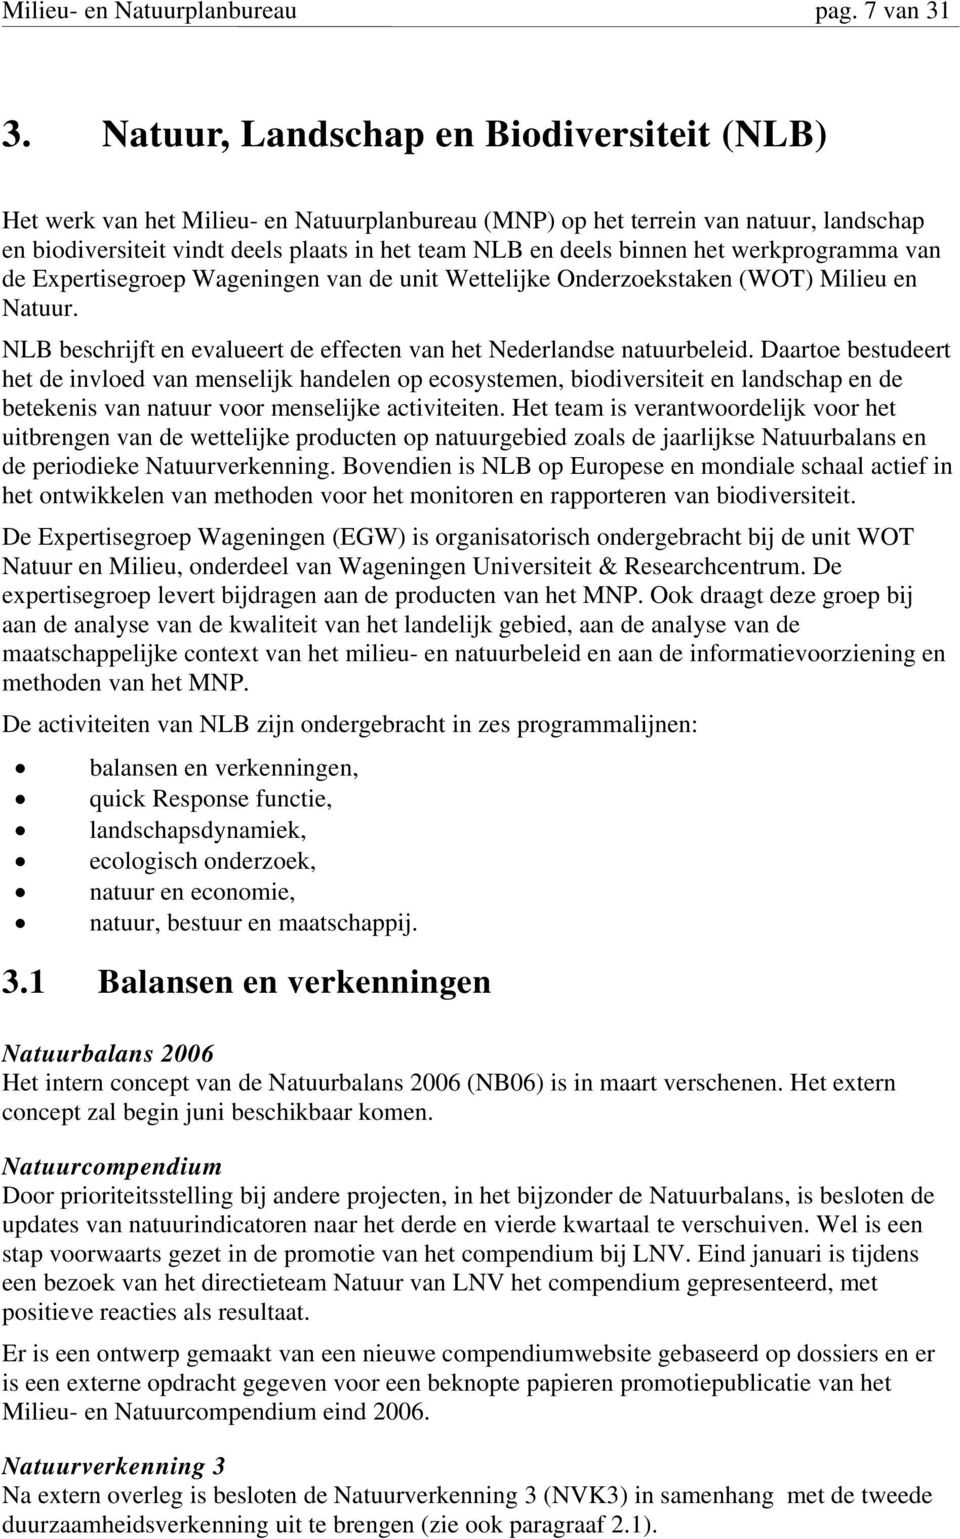 het werkprogramma van de Expertisegroep Wageningen van de unit Wettelijke Onderzoekstaken (WOT) Milieu en Natuur. NLB beschrijft en evalueert de effecten van het Nederlandse natuurbeleid.